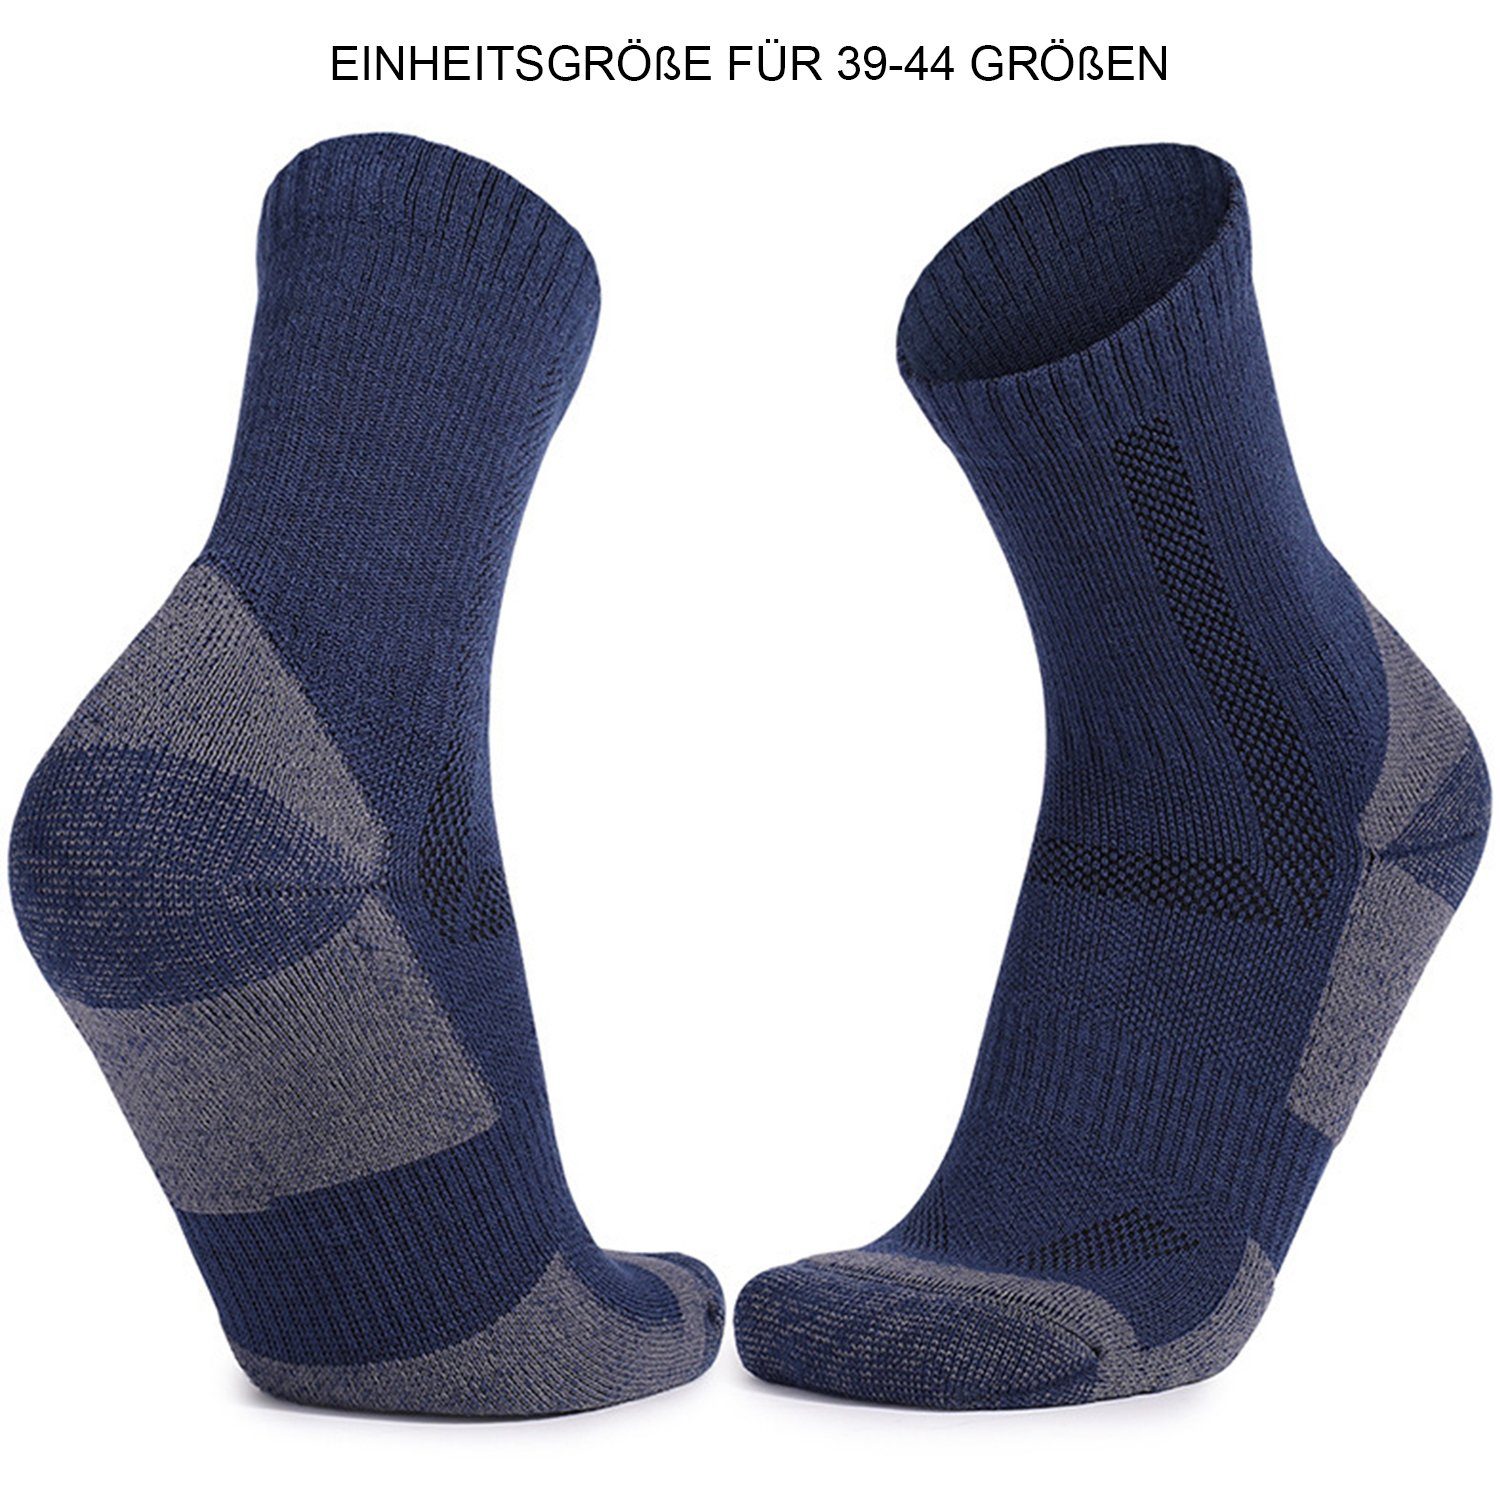 Daisred Komfortsocken 1 Winter rutschfest, Warme schweißabsorbierend Socken Herren Sportsocken Paar Dunkelblau